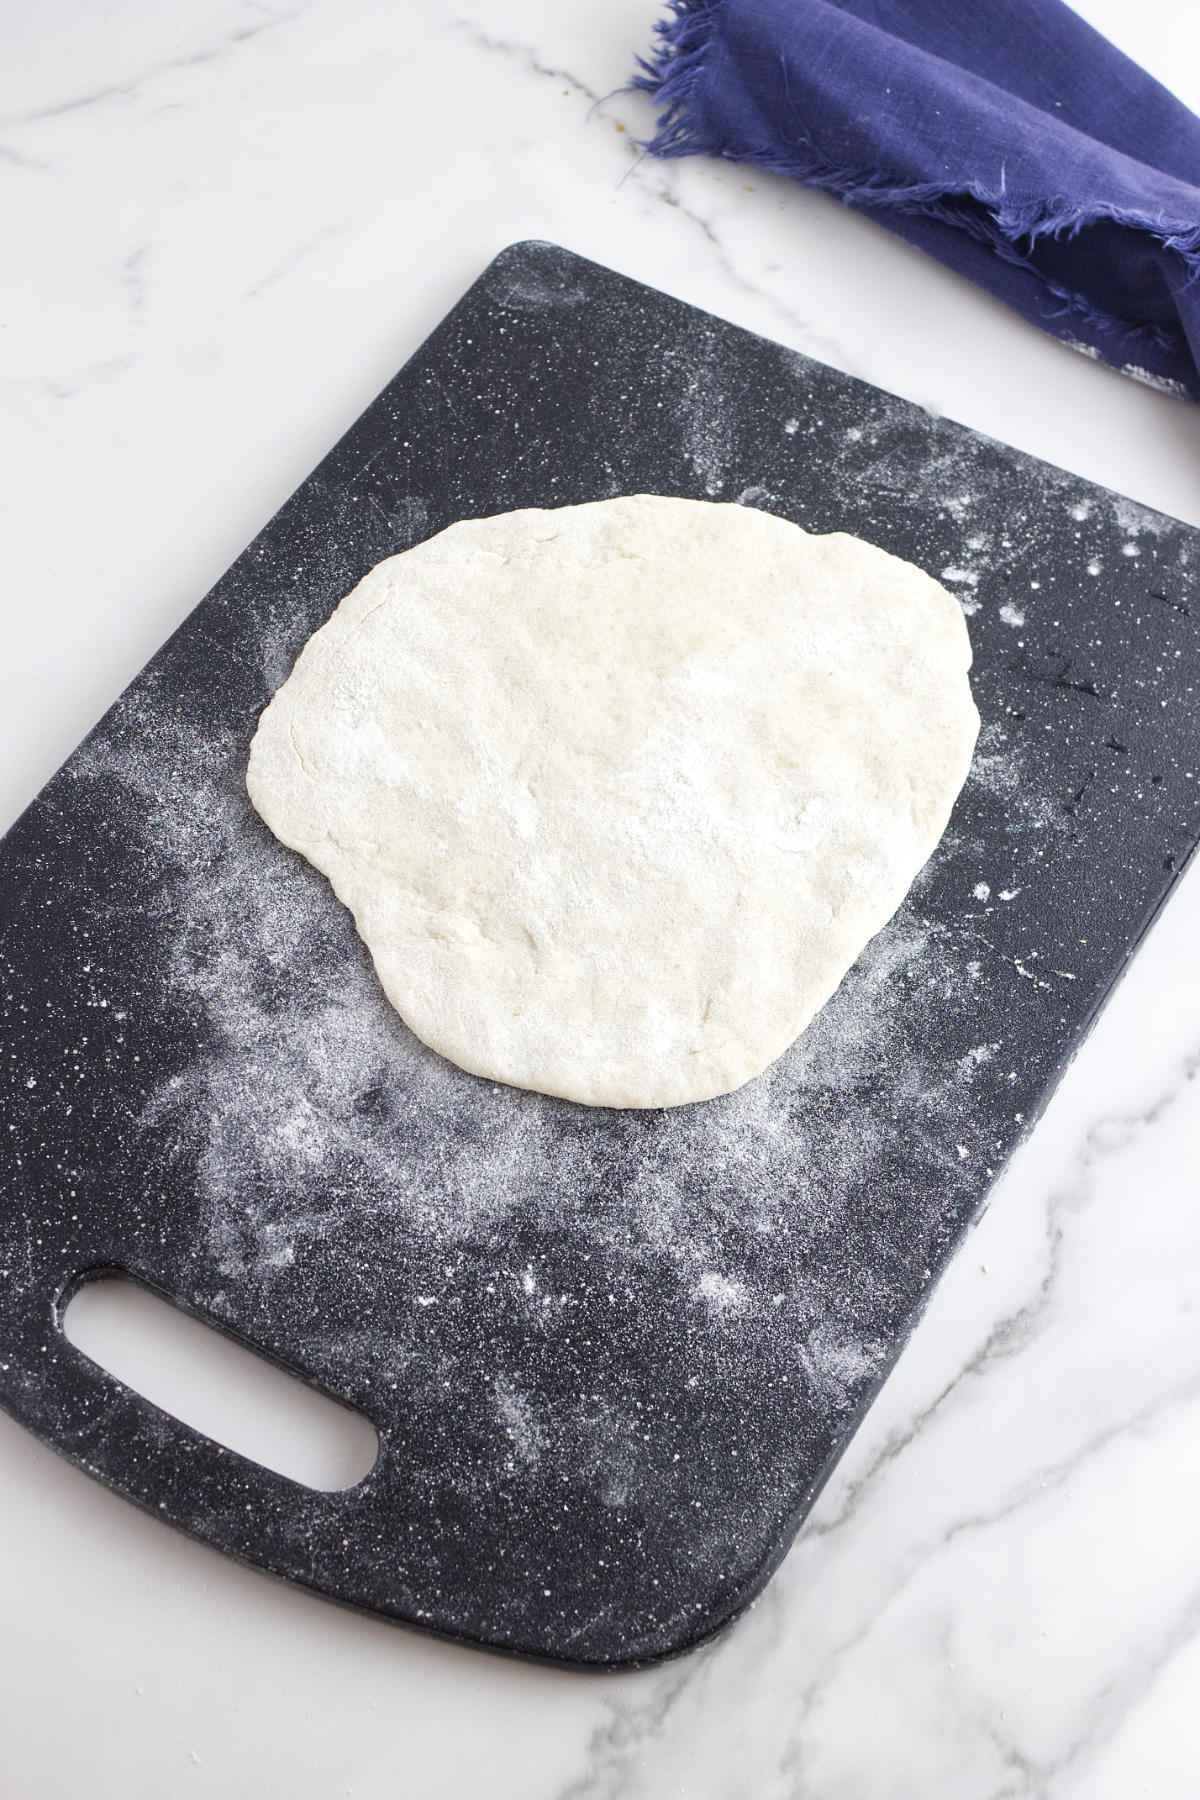 flattening a ball of dough.